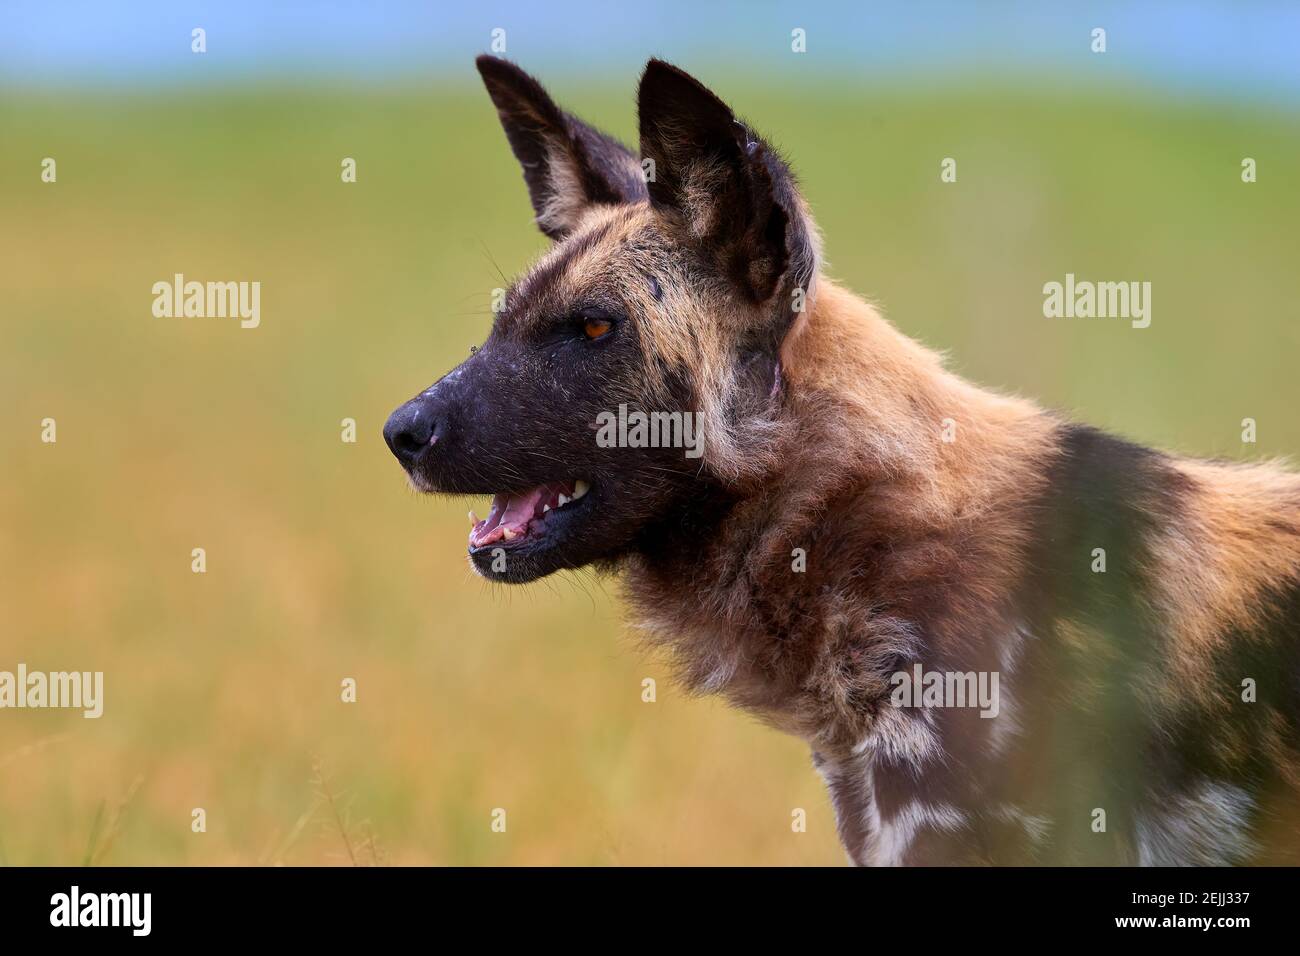 Porträt eines afrikanischen Wildhundes, Lycaon pictus, eines vom Aussterben bedrohten afrikanischen Raubtieres gegen grüne Savanne. Seitenansicht. Stockfoto